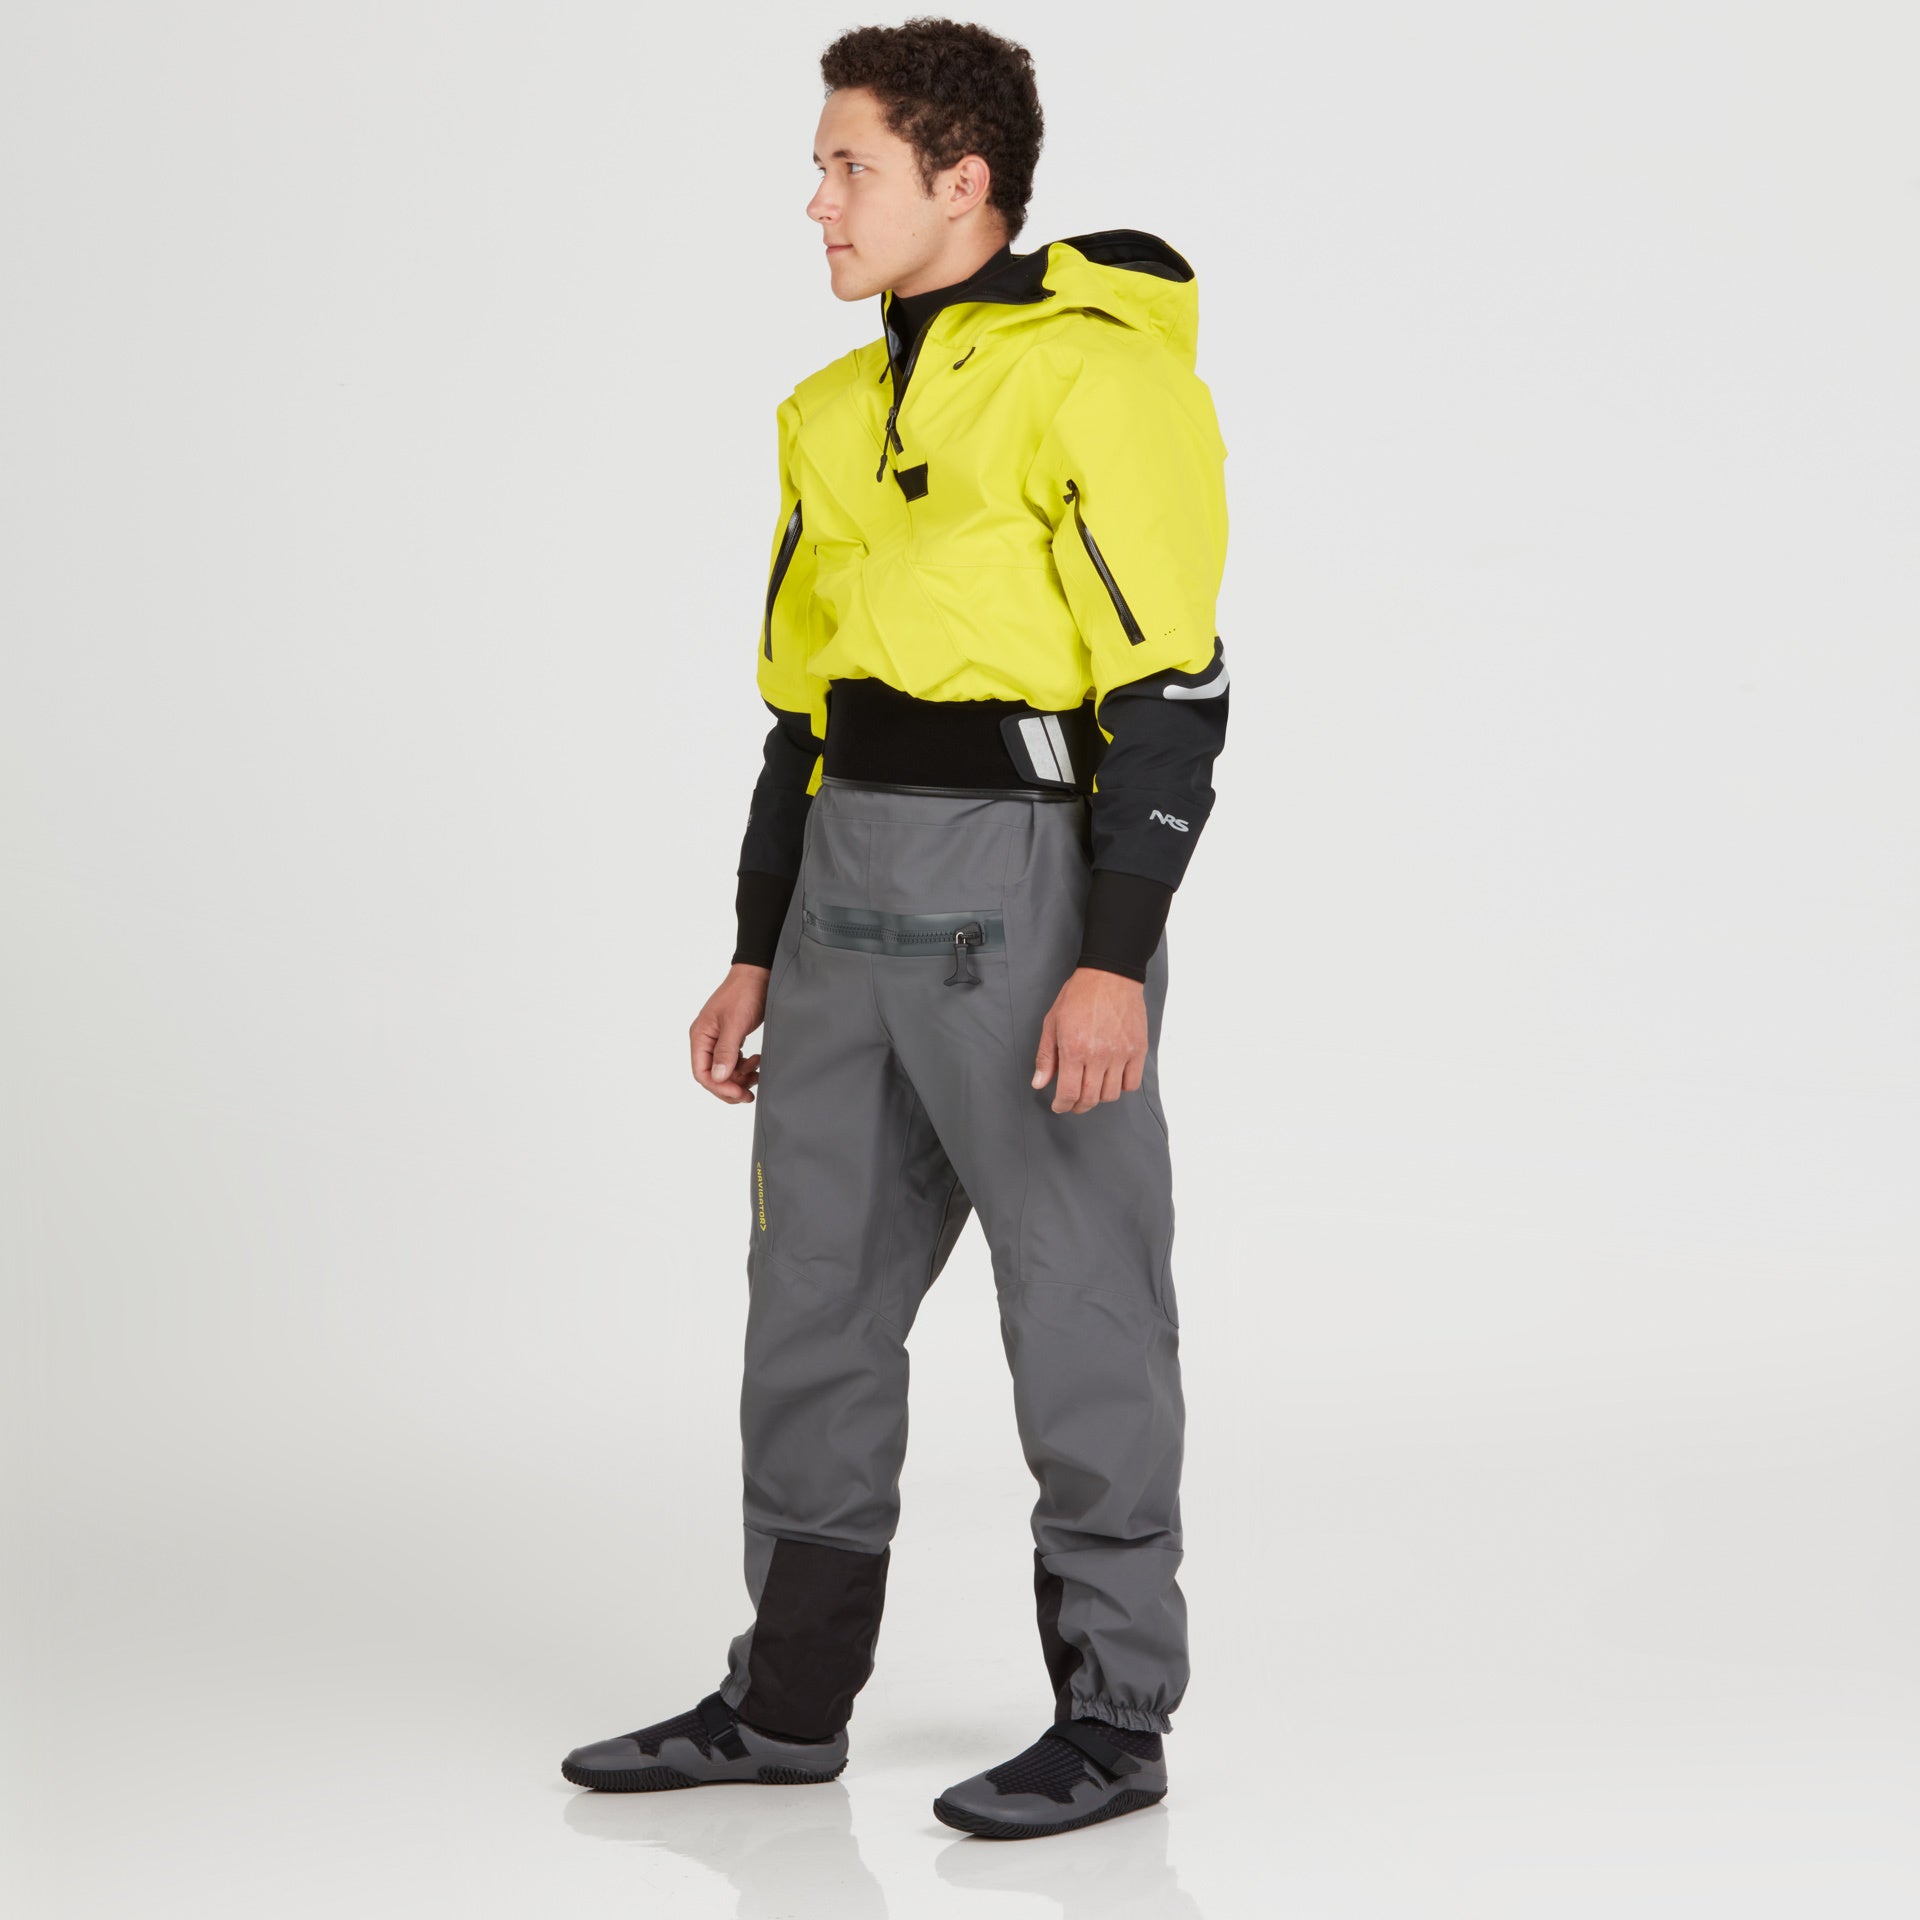 NRS - Men's Navigator GORE-TEX Semi-Dry Suit